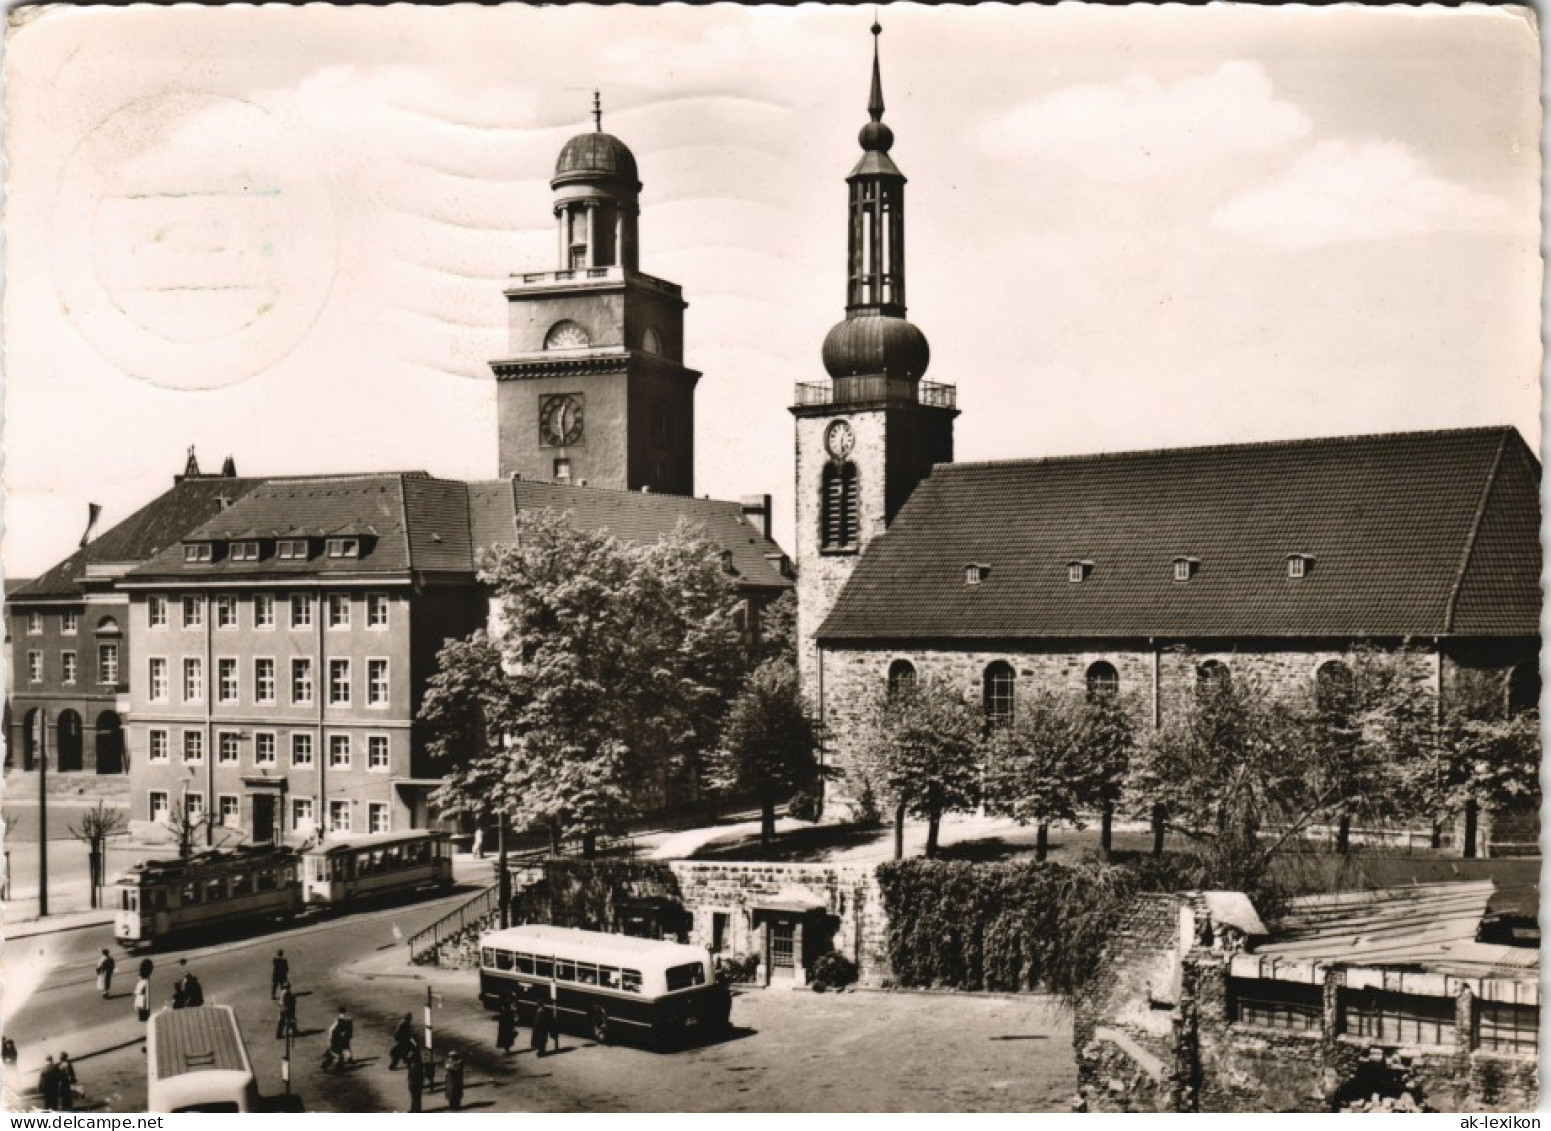 Ansichtskarte Witten (Ruhr) Marktplatz, Bus - Straßenbahn 1960 - Witten